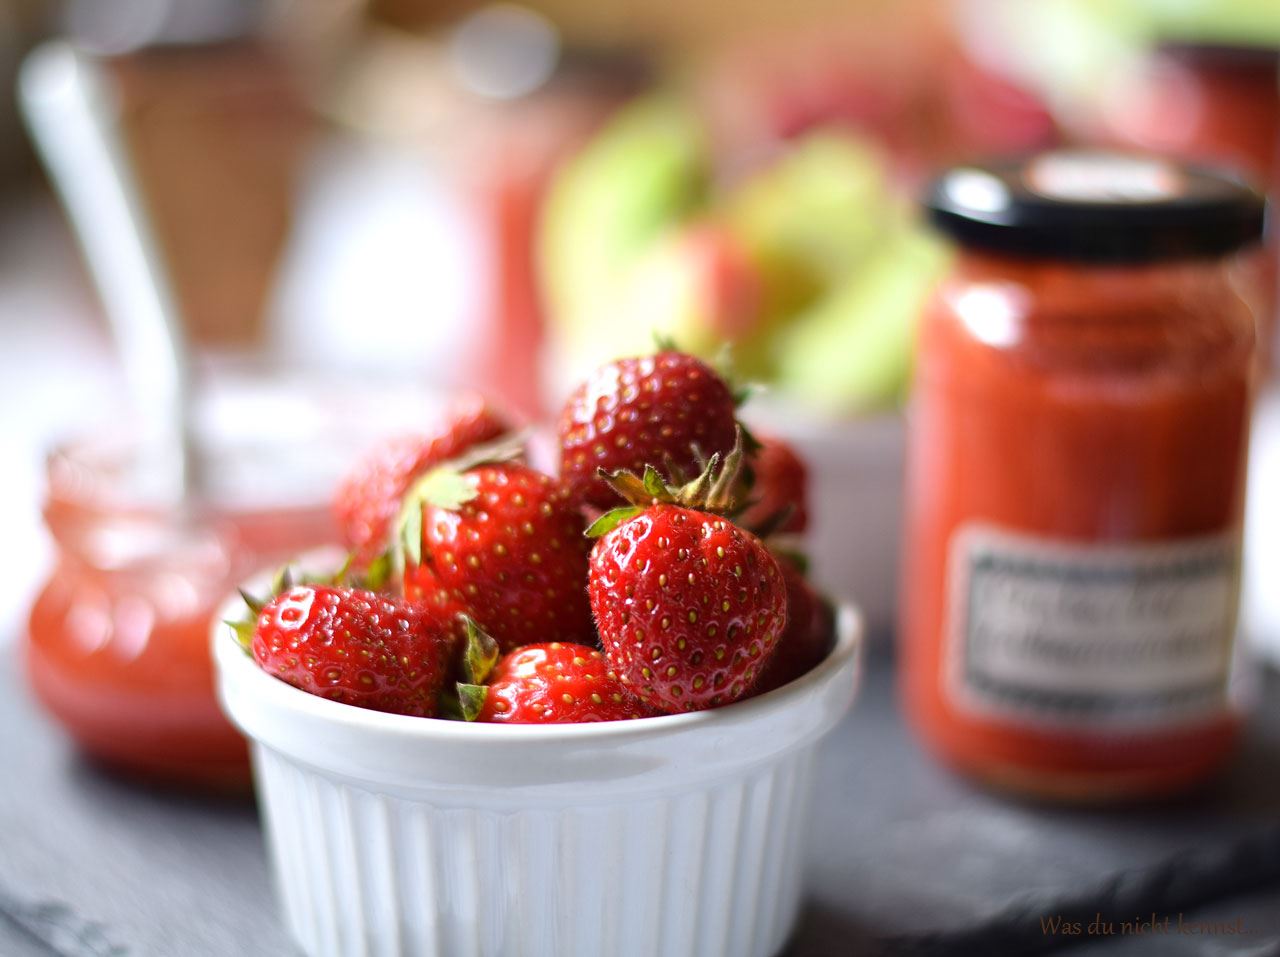 Erdbeer-Rhabarber Marmelade - Was du nicht kennst...